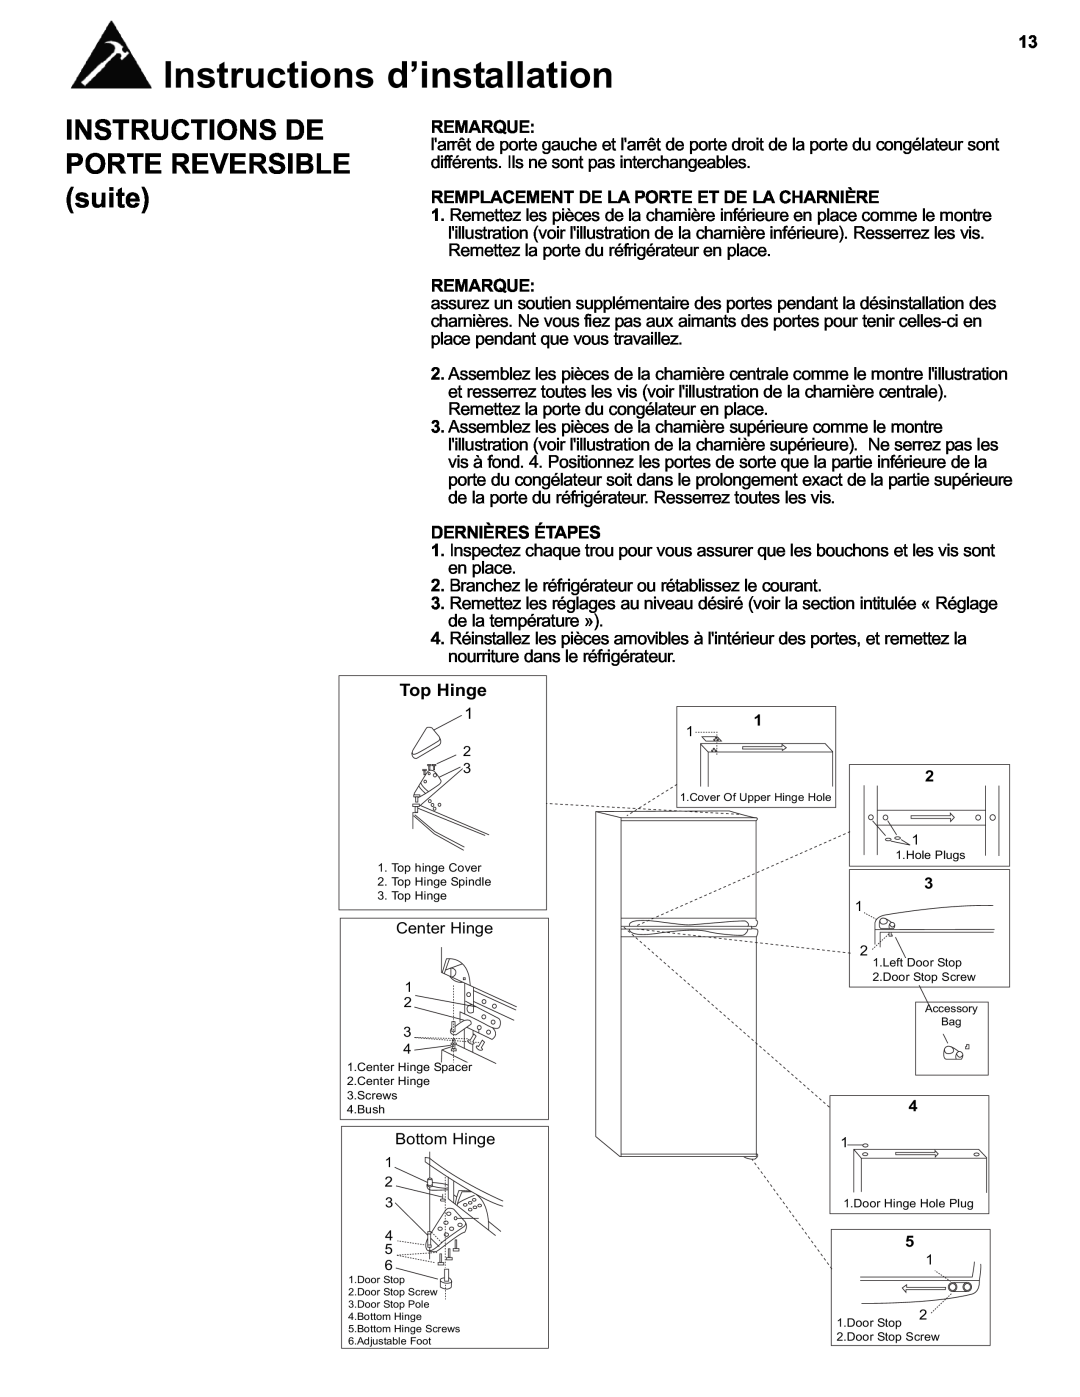 Danby DFF280WDB manual Instructions De, Porte Reversible, suite, Remarque, différents. Ils ne sont pas interchangeables 